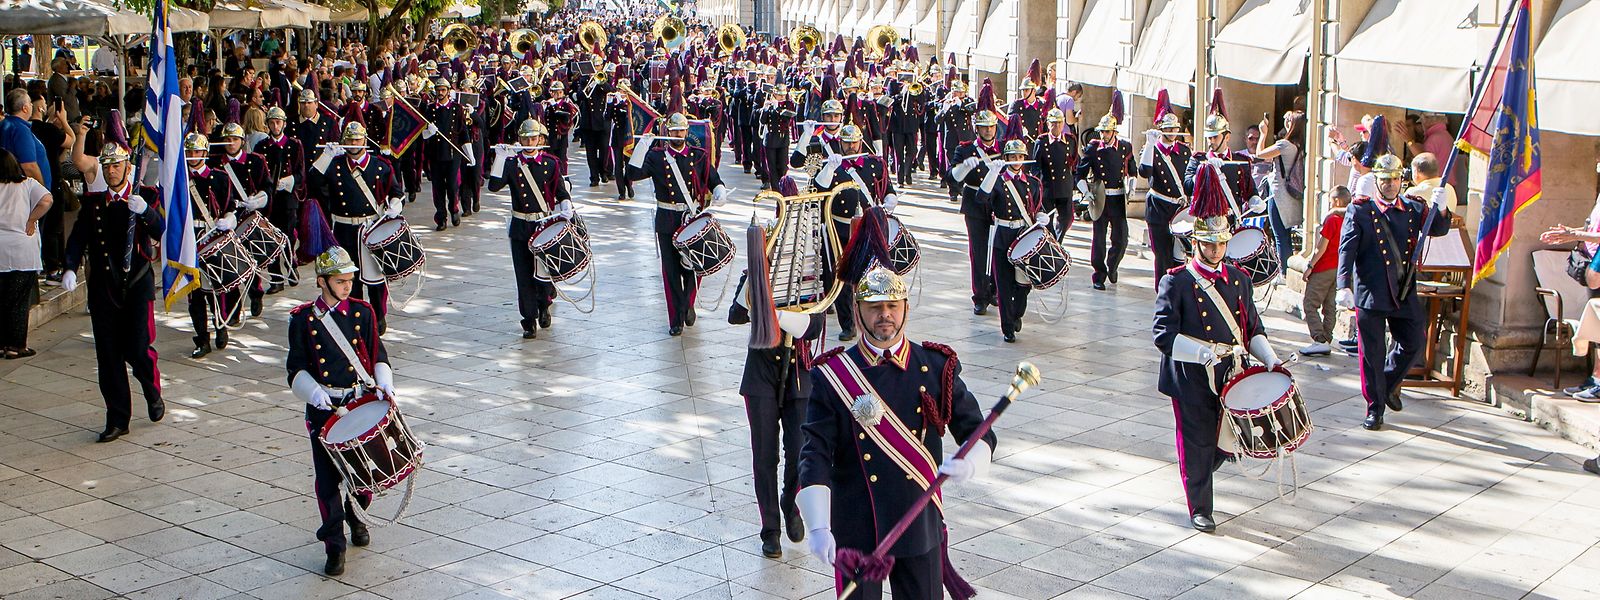 Zum Osterfest ziehen unzählige Musiker durch die Straßen der Stadt Korfu.  